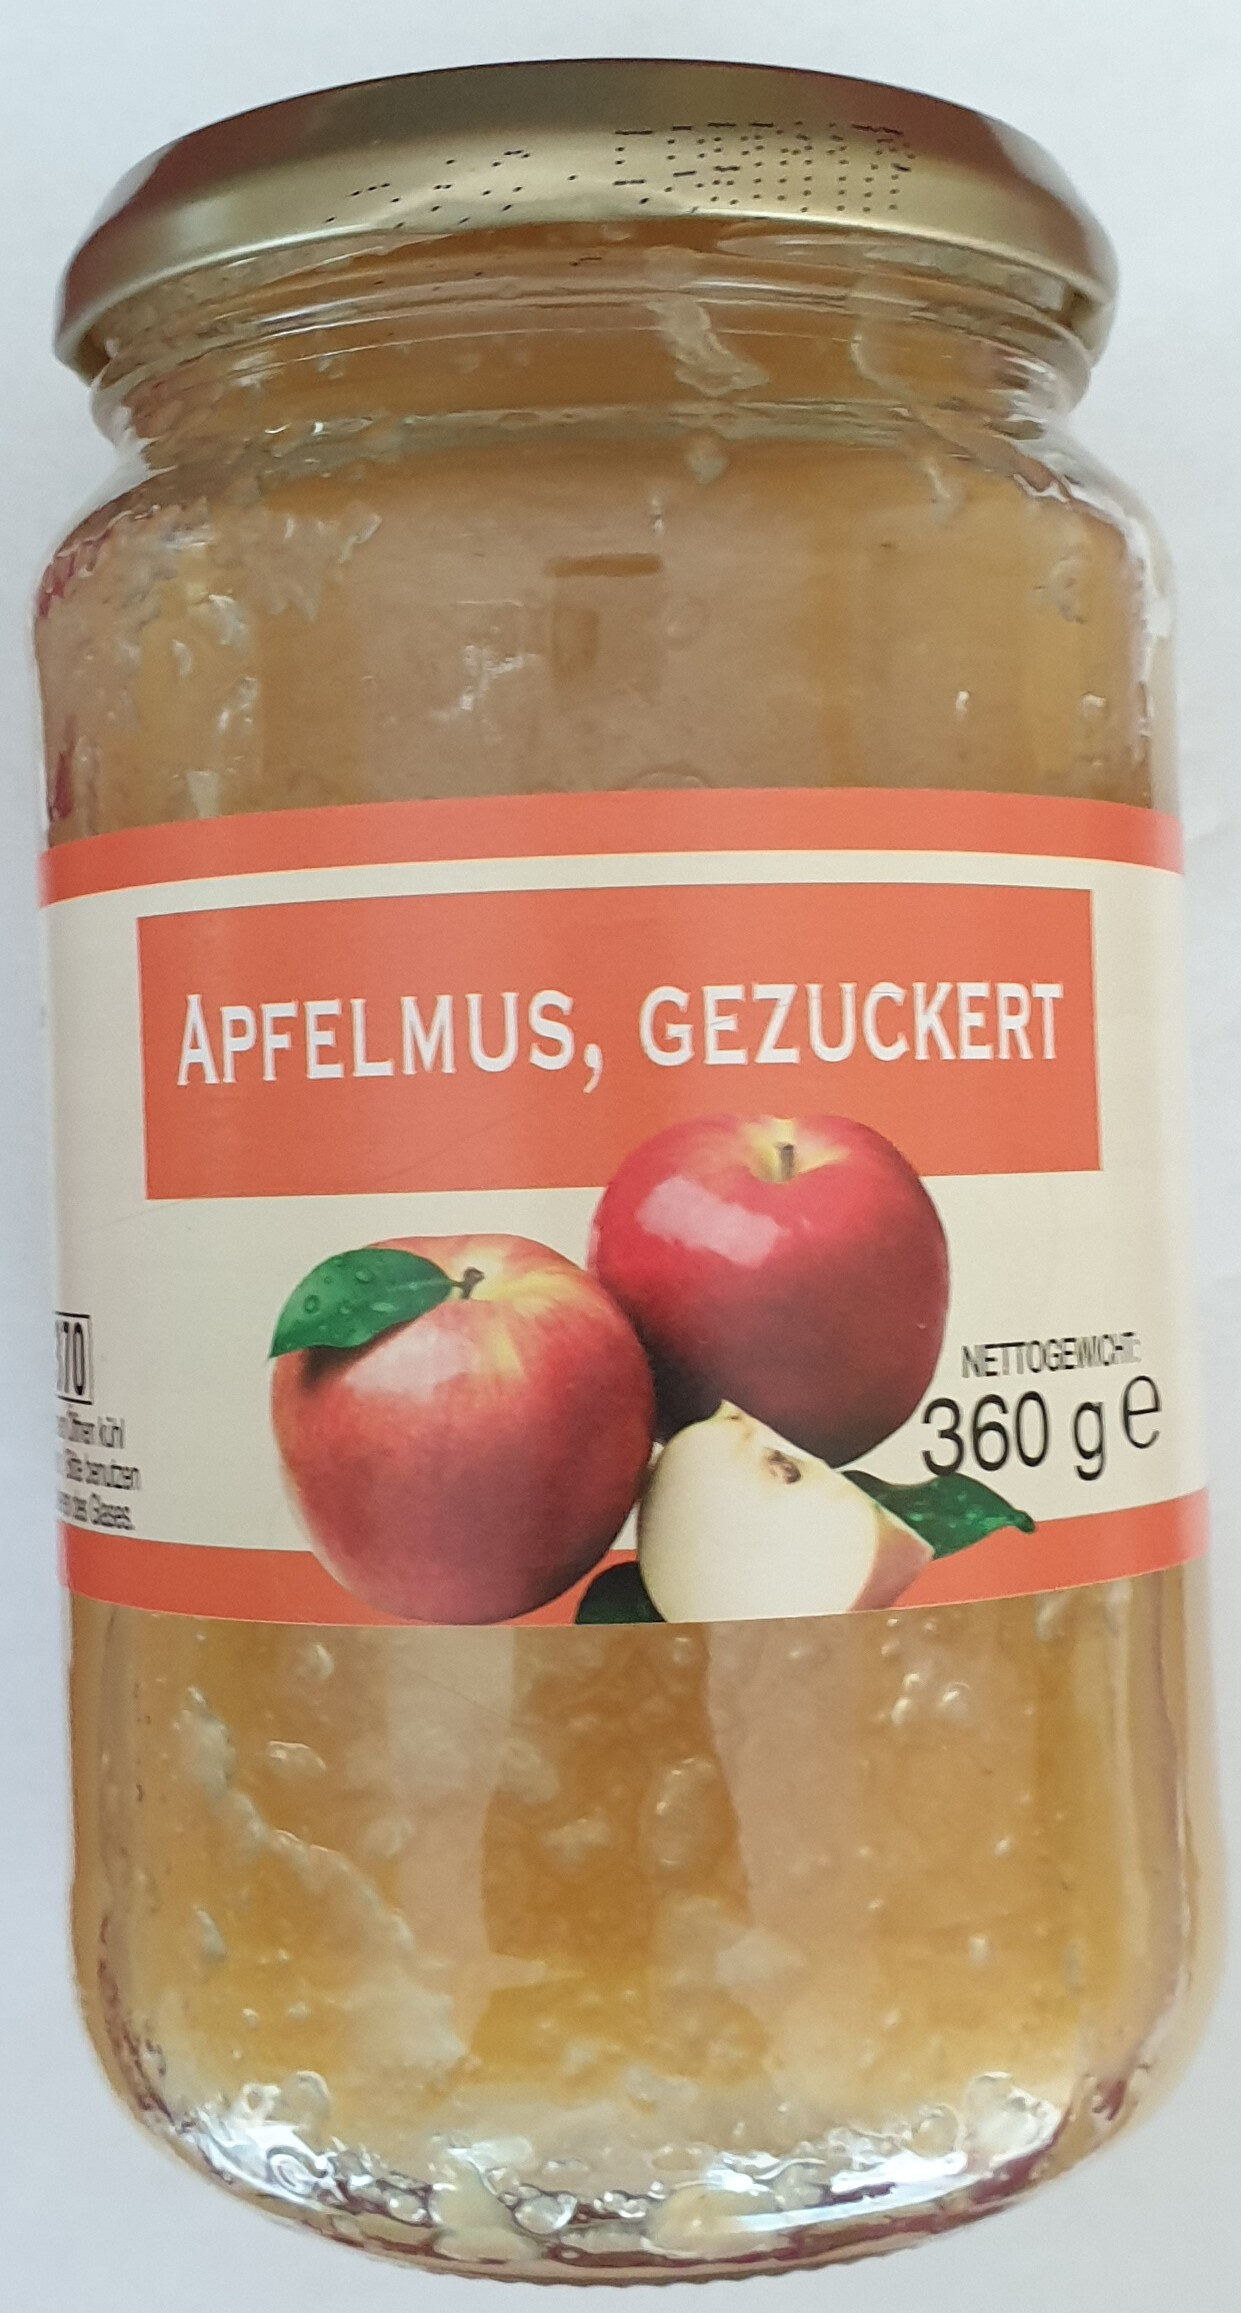 Apfelmus, gezuckert - Product - de